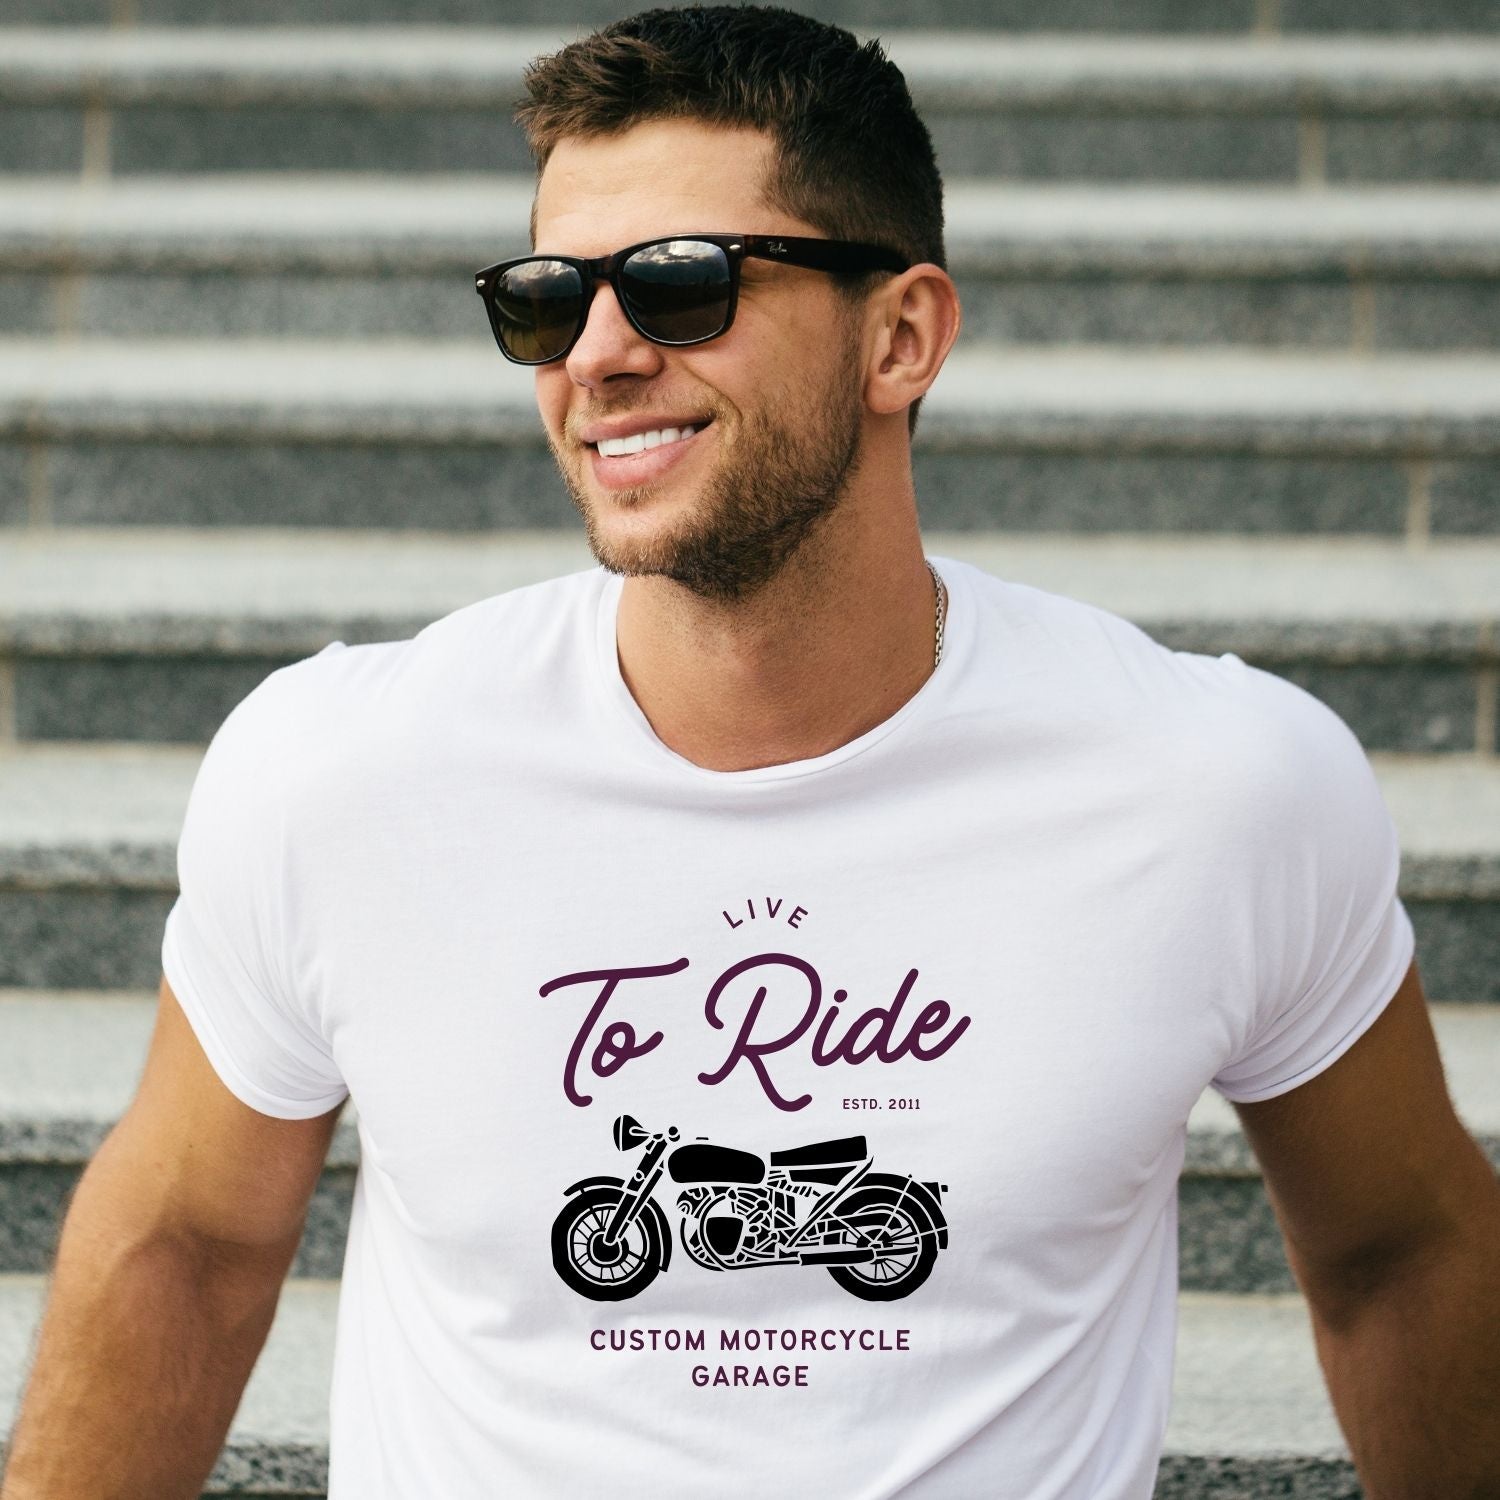 Tricou Live to ride - Cadouri Personalizate